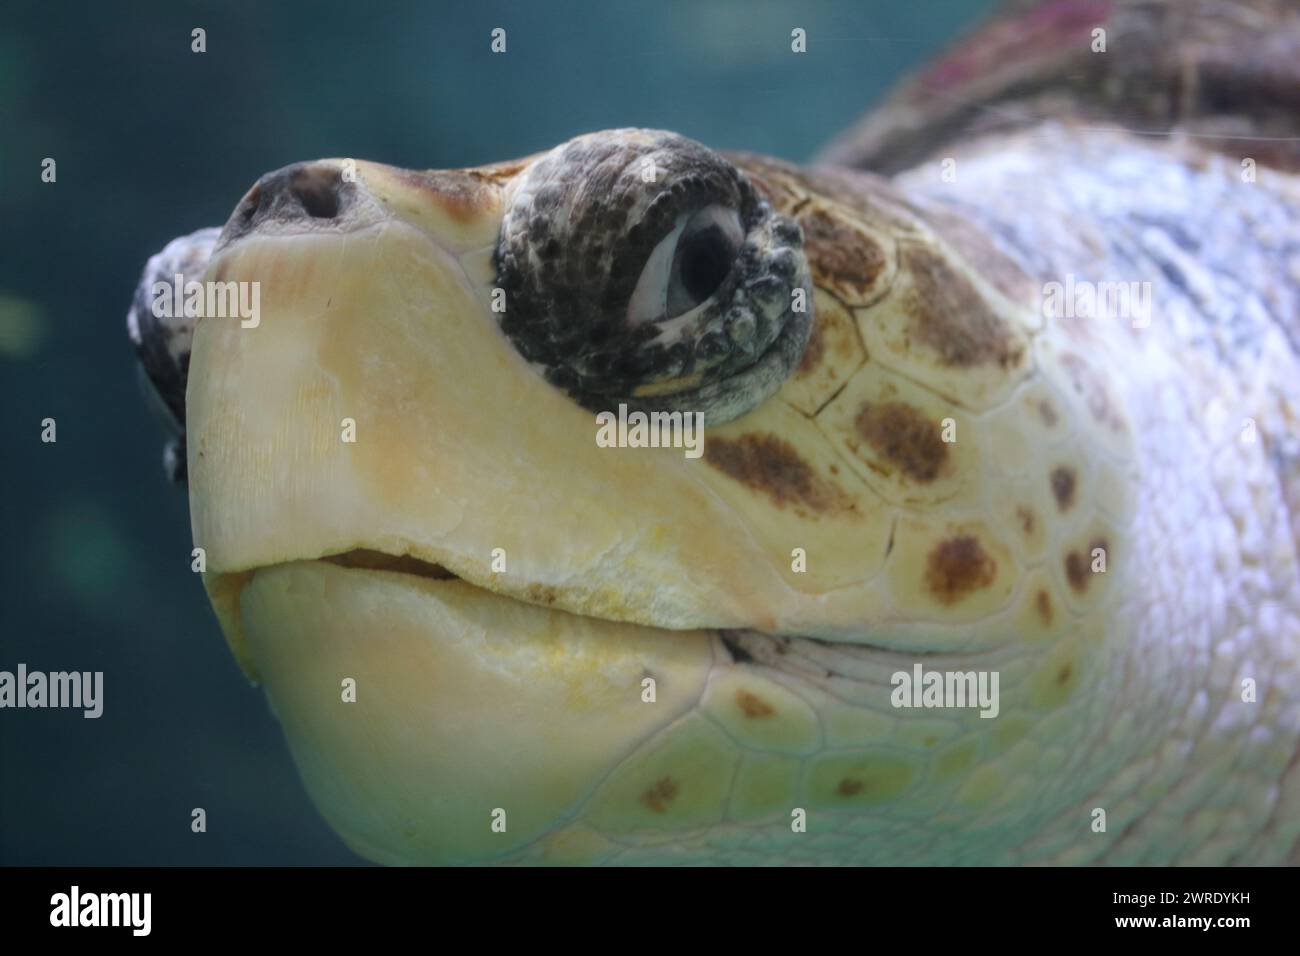 La tartaruga di mare (Caretta caretta) è una tartaruga oceanica distribuita in tutto il mondo. E' un rettile marino, appartenente a. Foto Stock